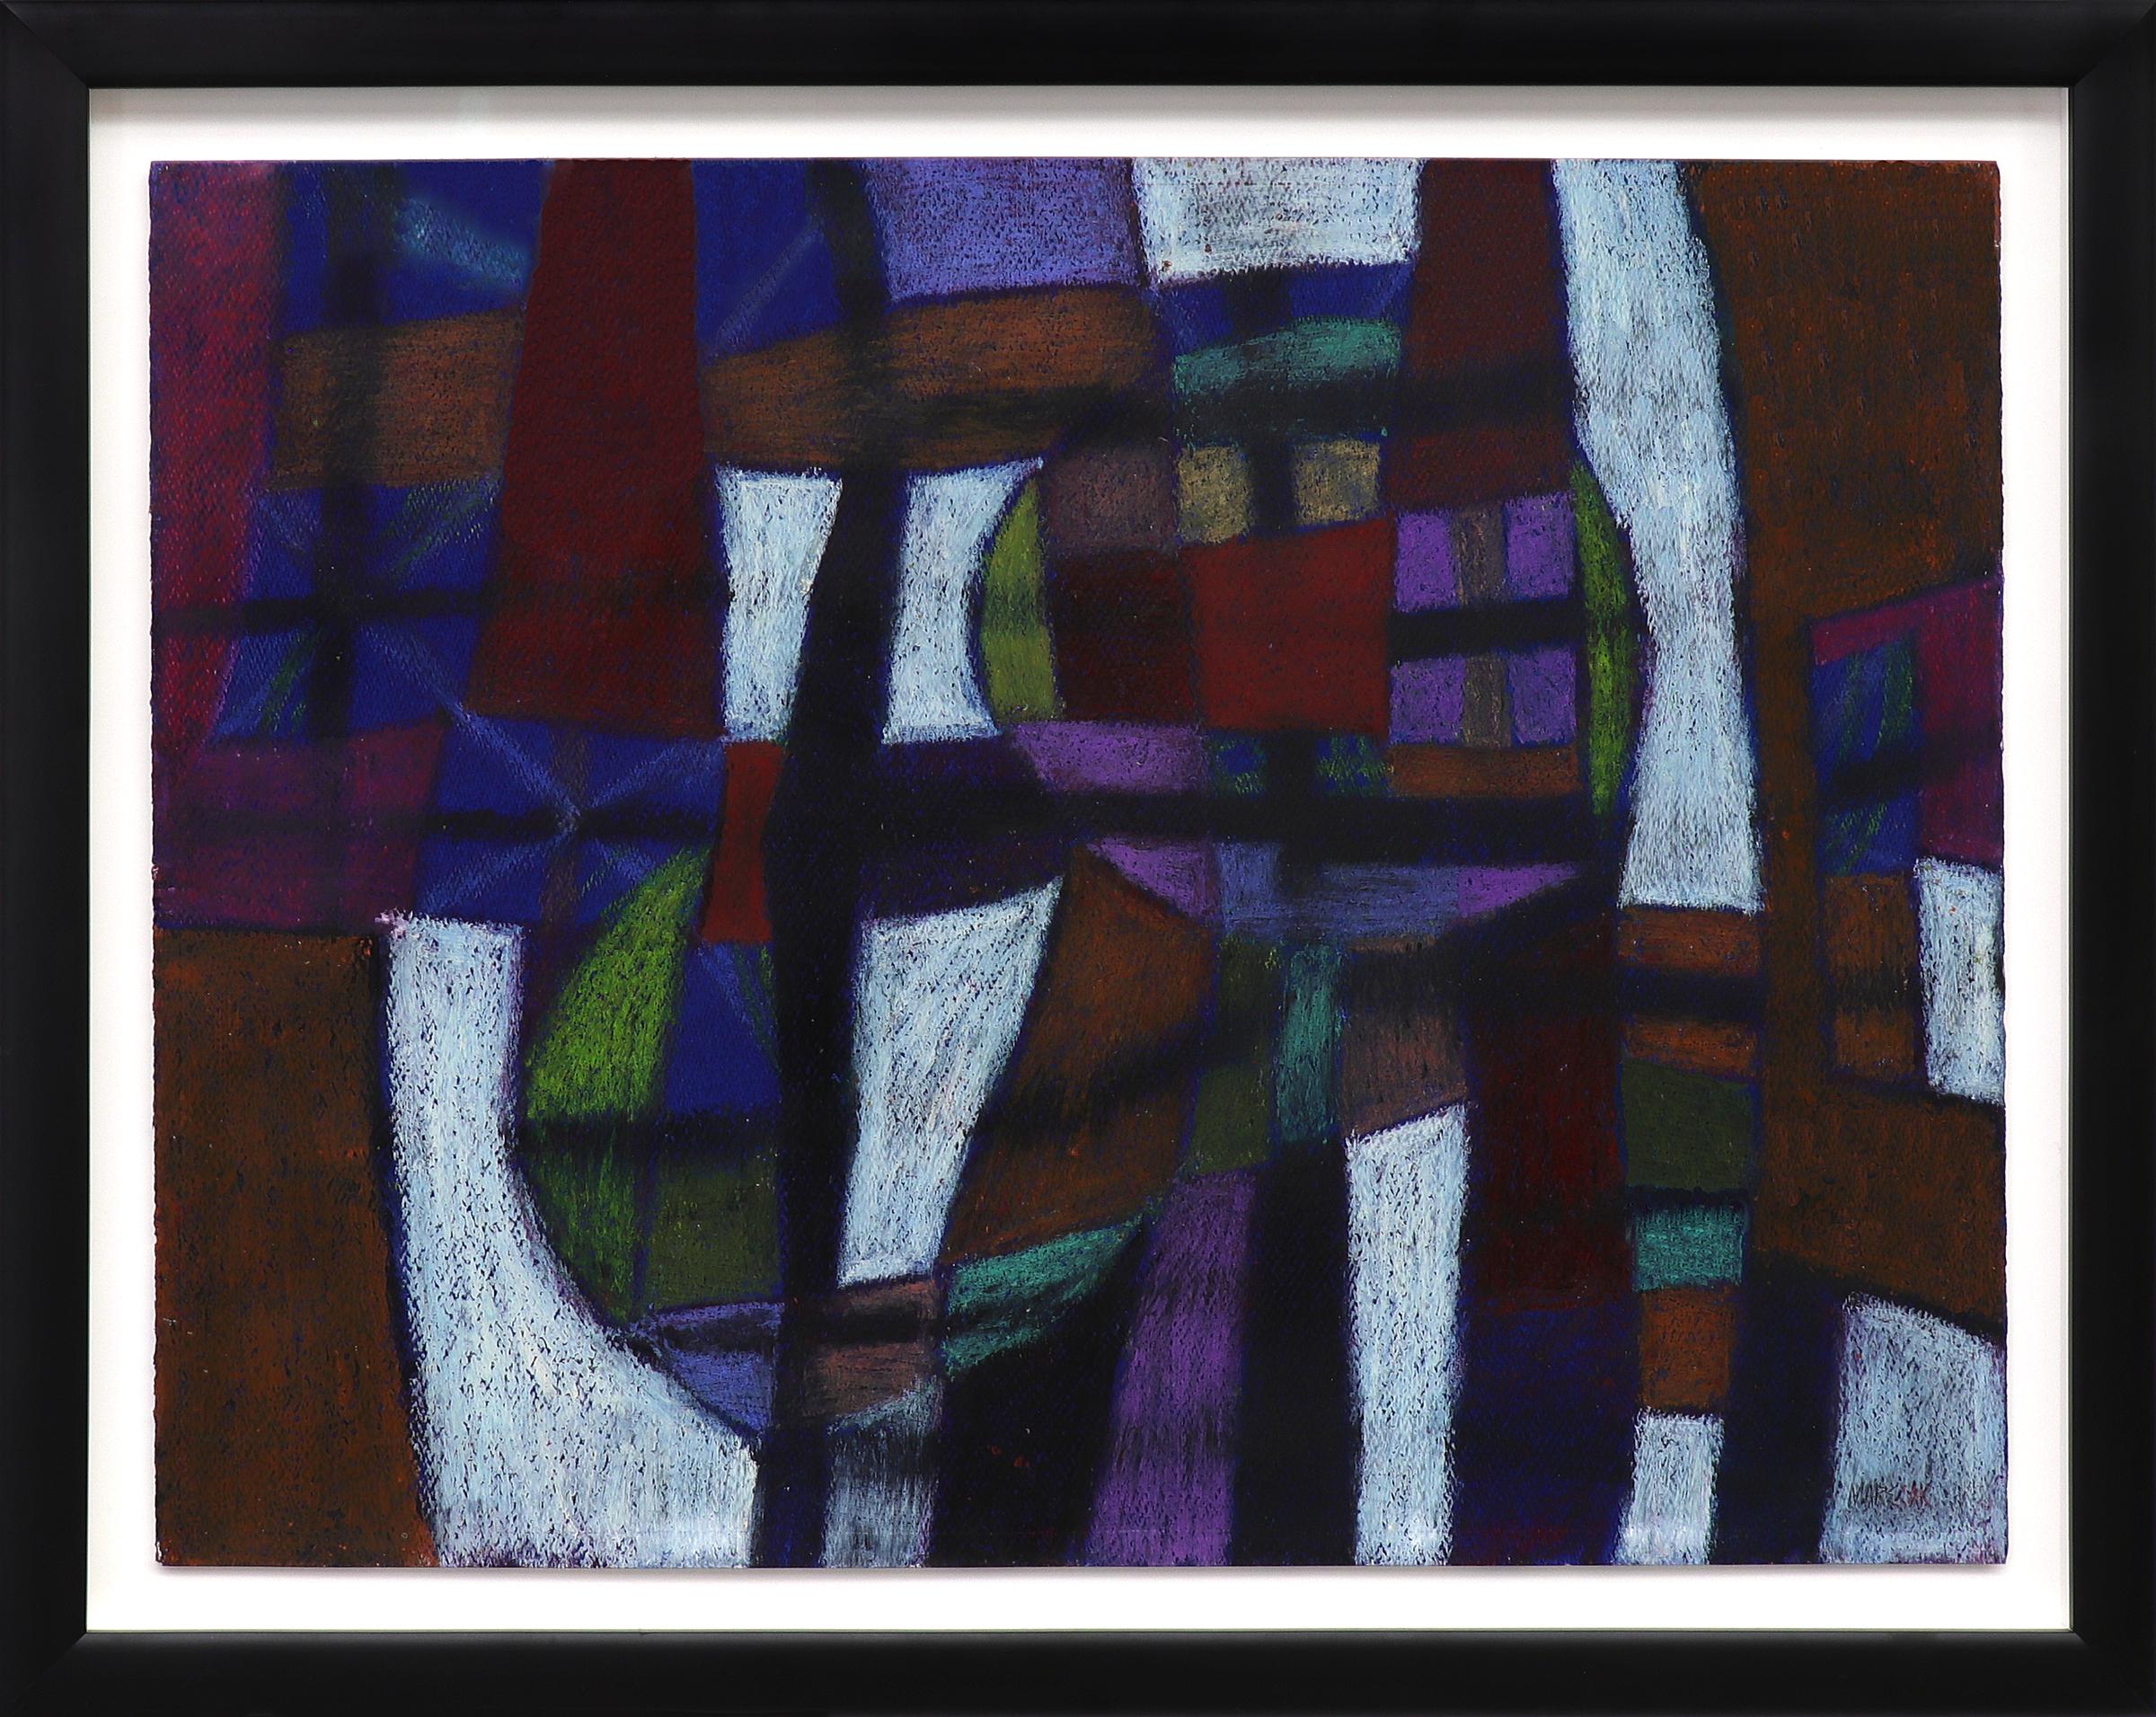 Peinture acrylique abstraite sans titre n° 26 des années 1970, technique mixte, bleu, violet et rouge - Mixed Media Art de Edward Marecak